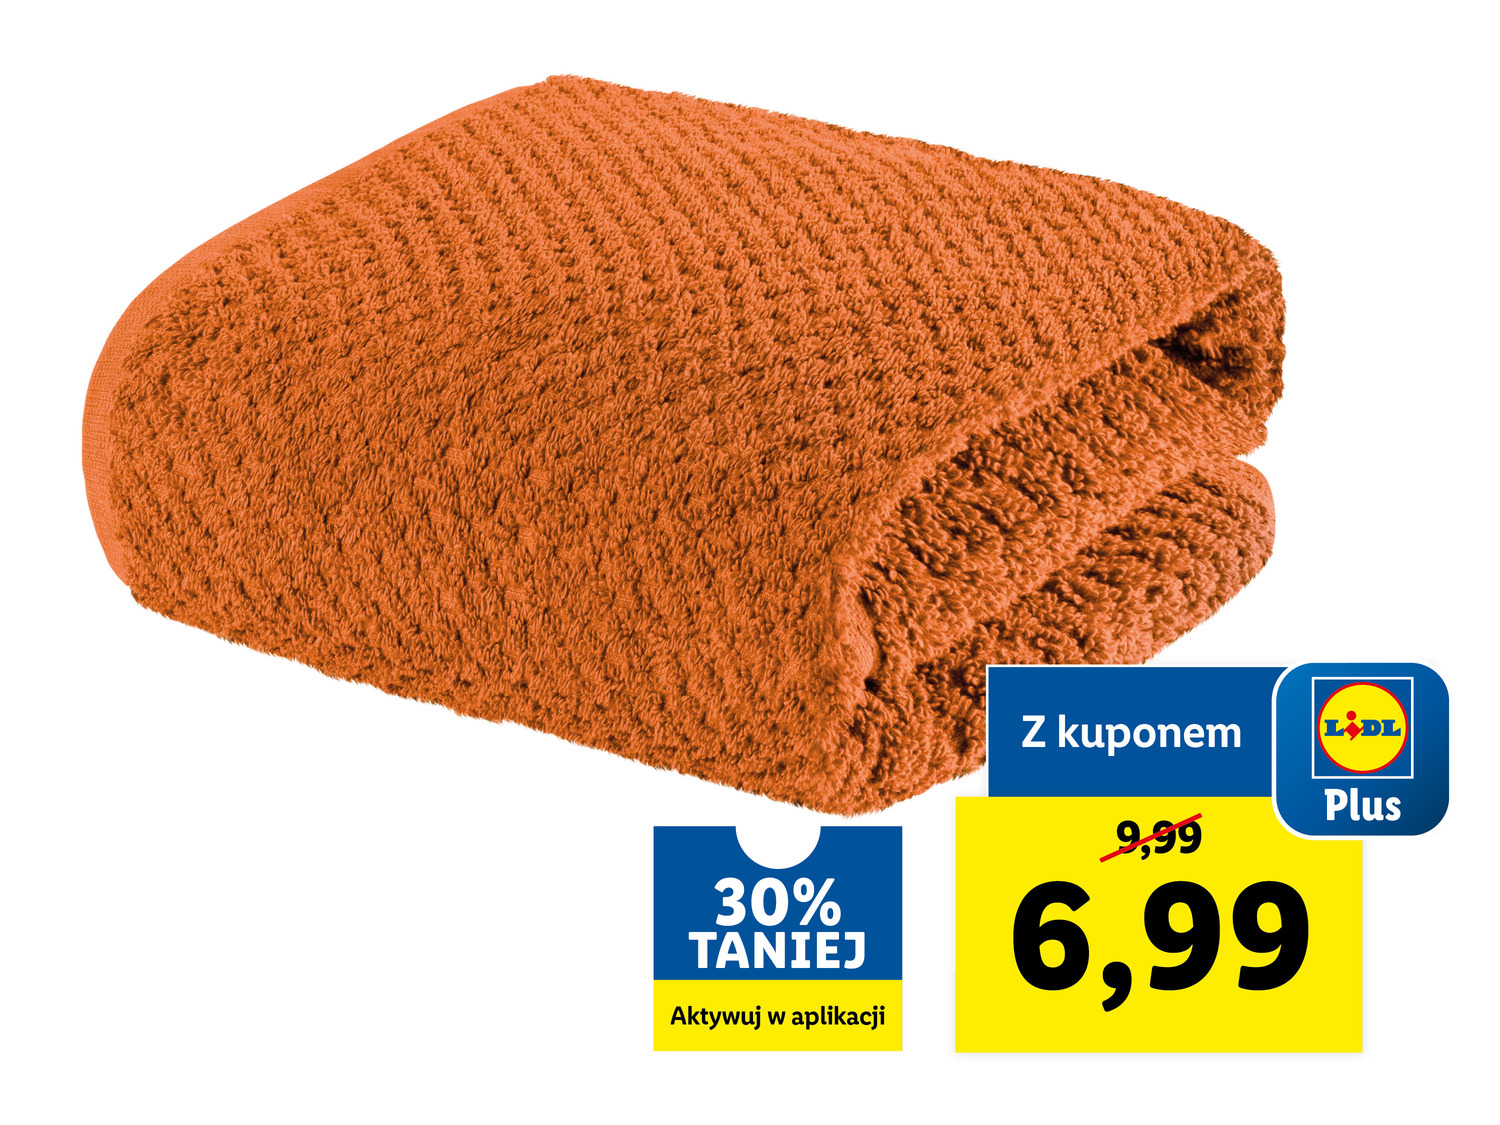 Ręcznik frotté 50 x 90 cm Livarno, cena 9,99 PLN 
- 500 g/m&sup2;
- 100% bawełny
- ...